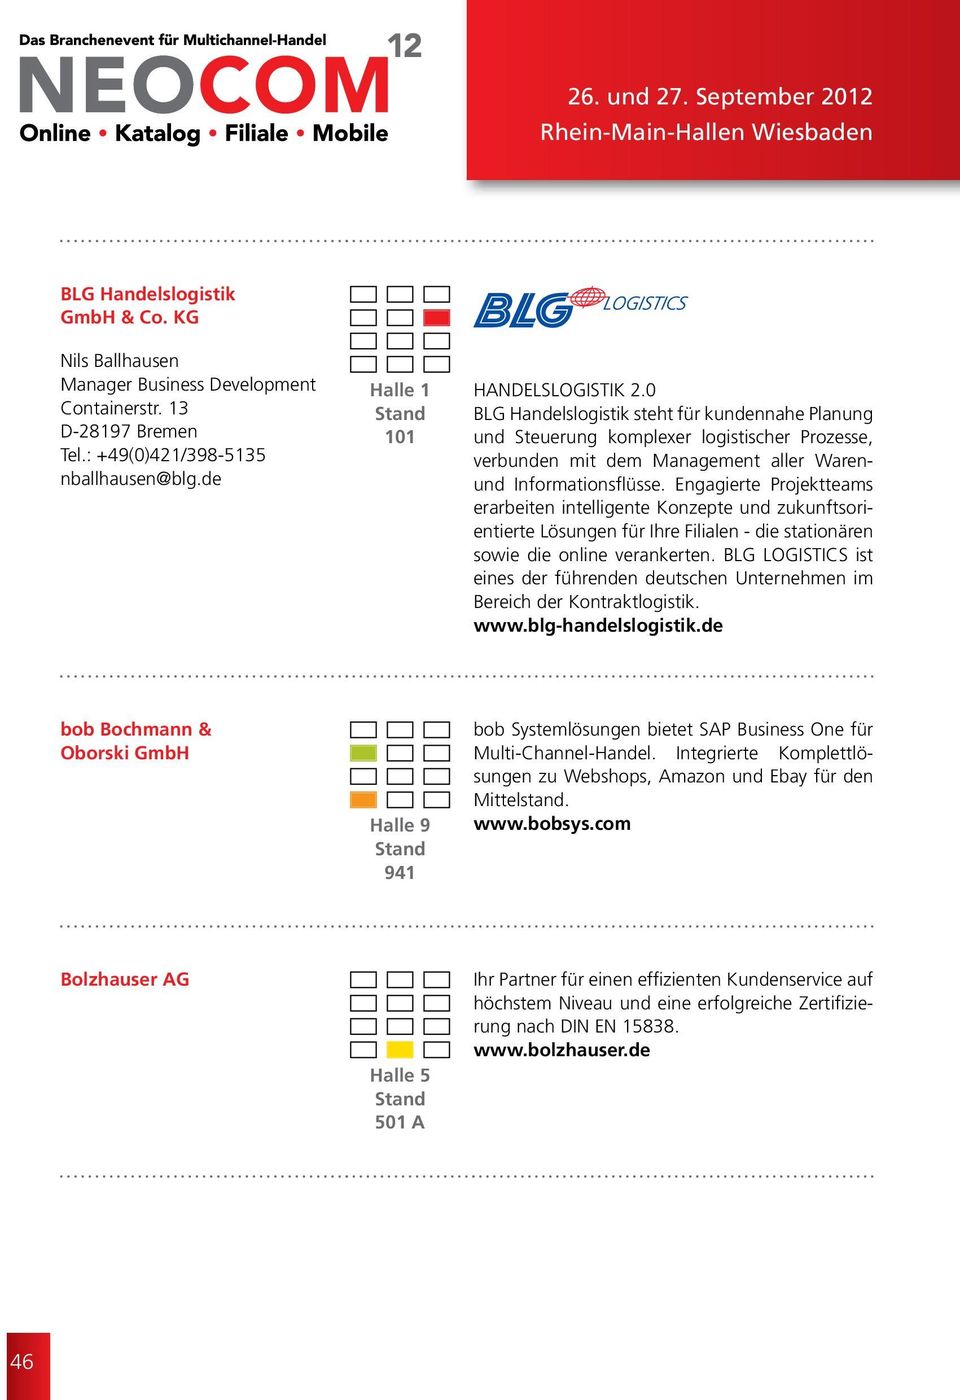 0 BLG Handelslogistik steht für kundennahe Planung und Steuerung komplexer logistischer Prozesse, verbunden mit dem Management aller Warenund Informationsflüsse.